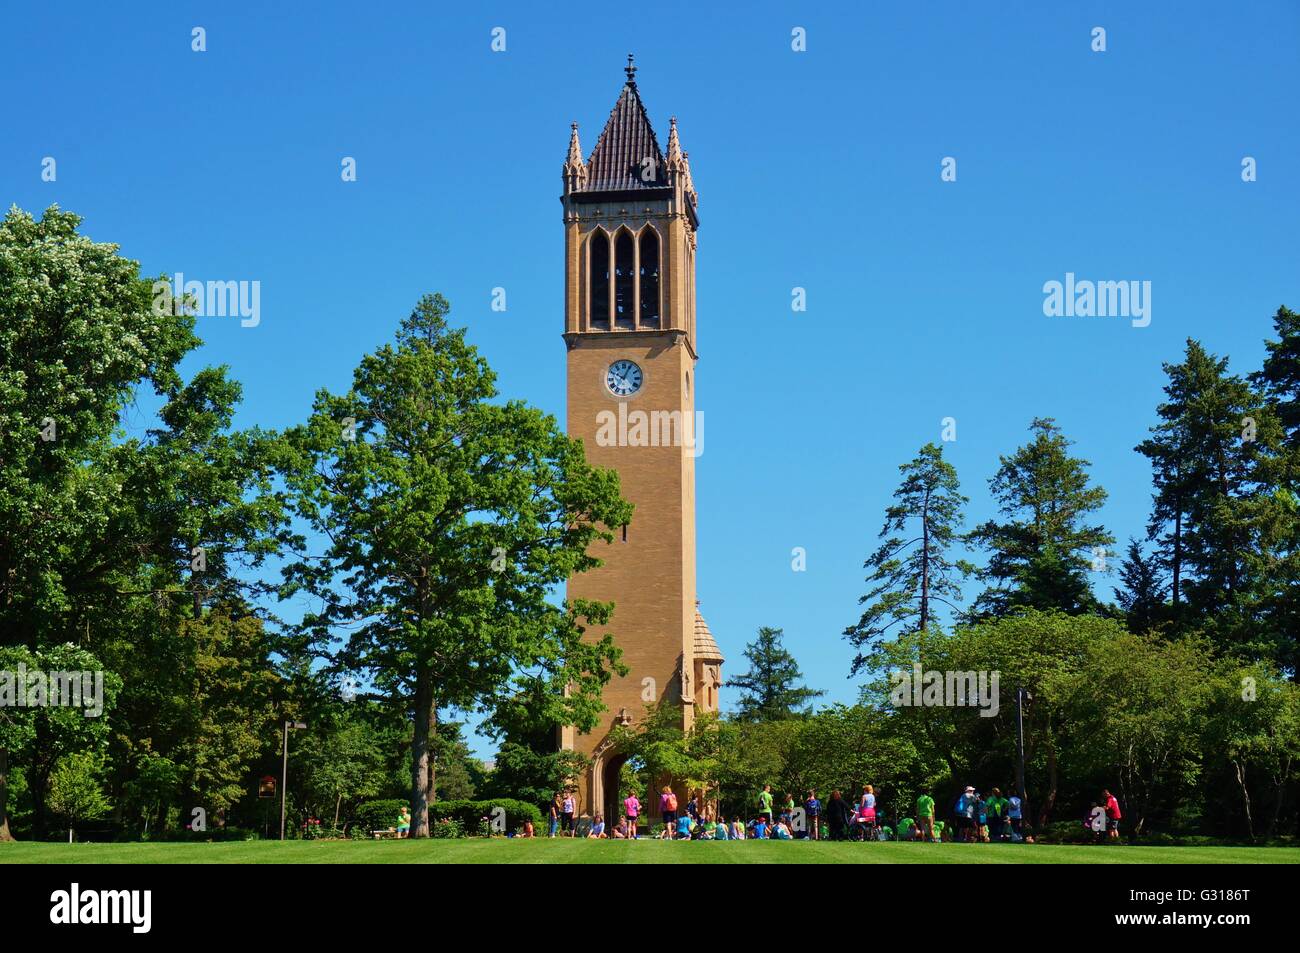 Le monument Stanton carillon clocher campanile sur le campus de l'Université d'Iowa Banque D'Images